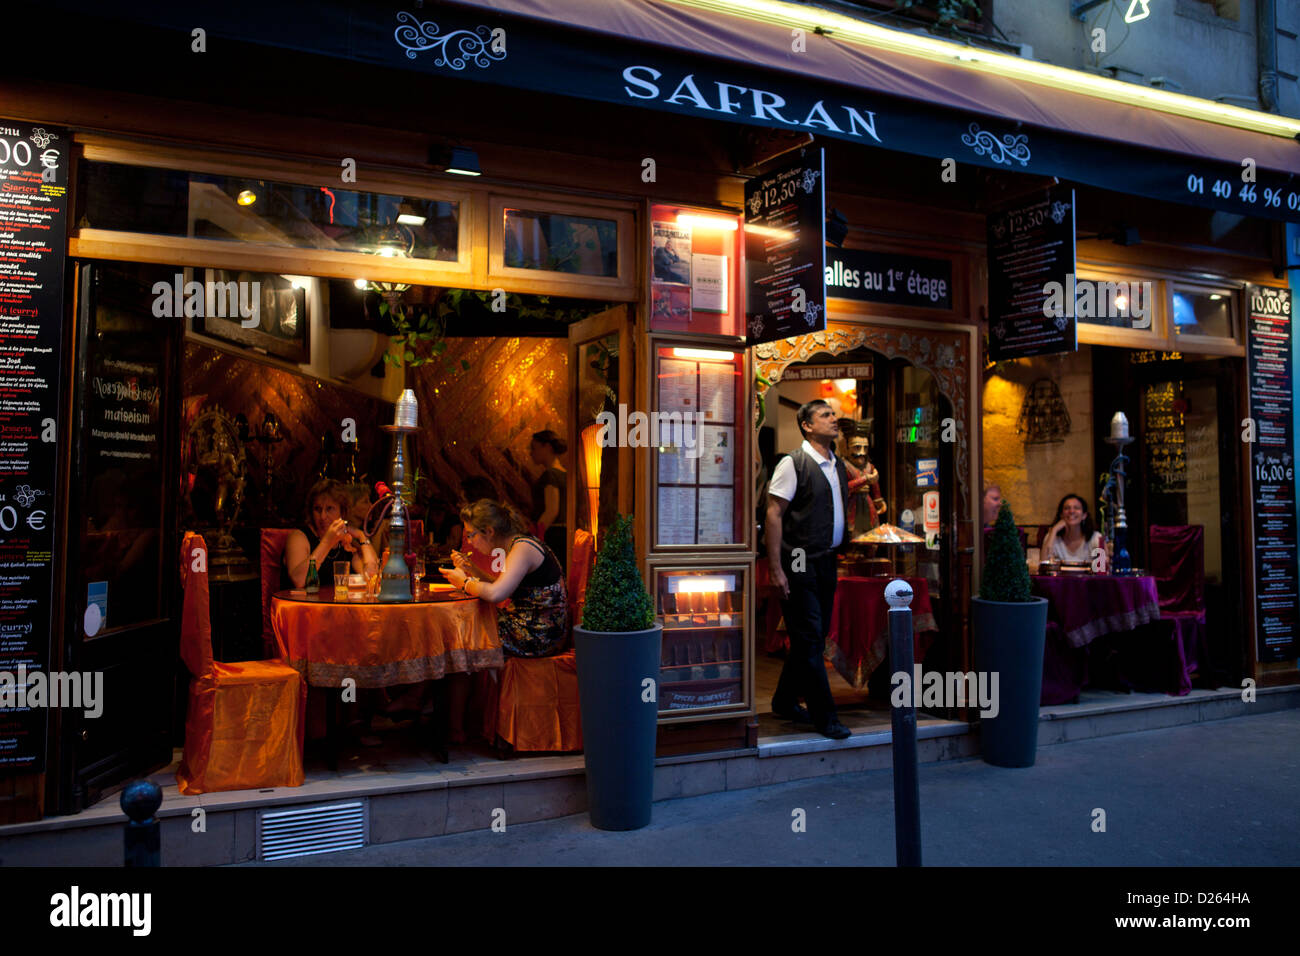 Safran, ristorante indiano nel Quartiere Latino di Parigi. Cameriere outdoor permanente chiamando nuovi clienti Foto Stock